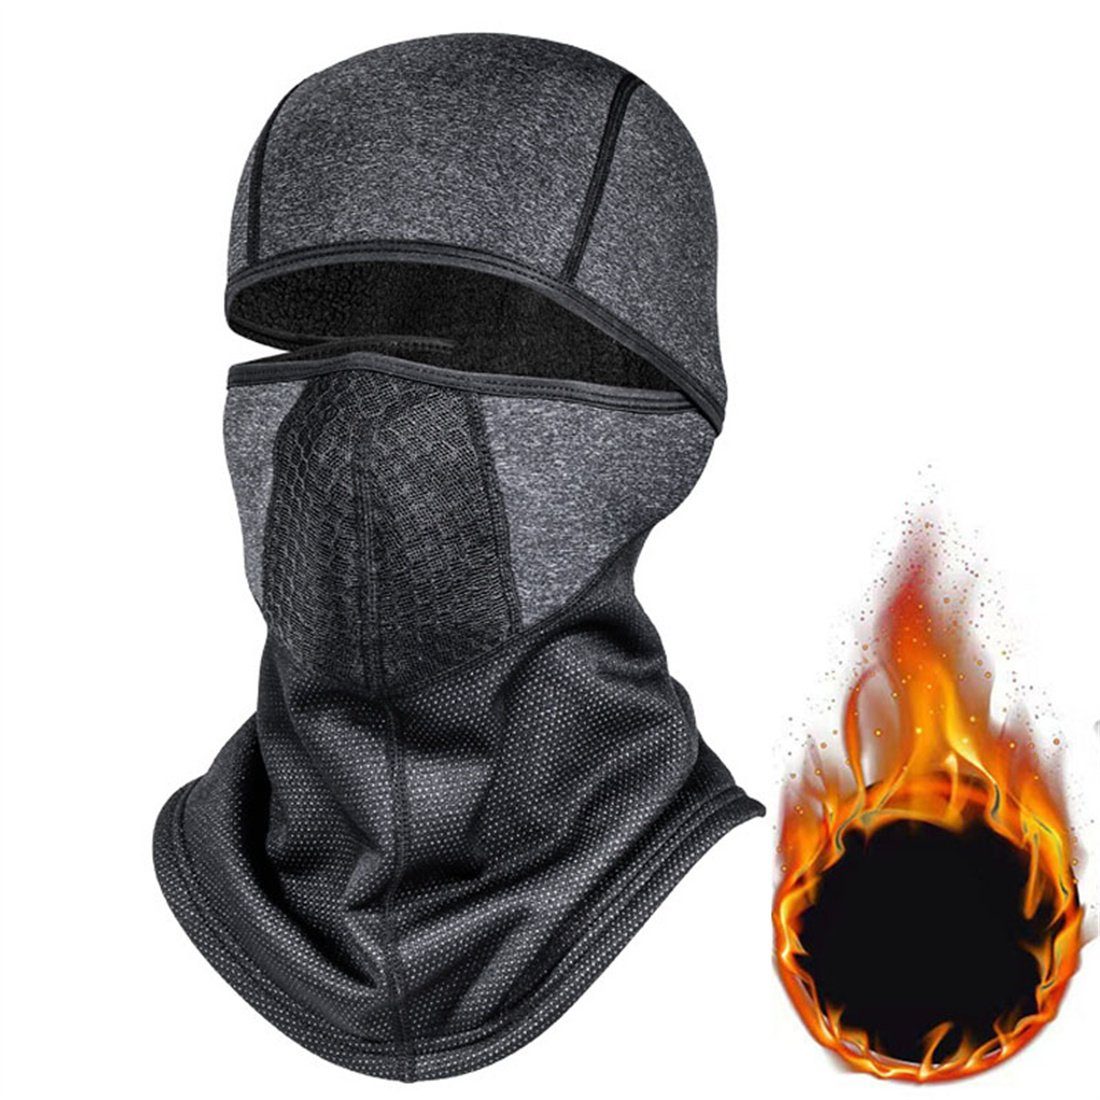 Sturmhaube Halsschutz Kopfbedeckung, DÖRÖY dunkelgrau Outdoor-Radfahren Winter-Ski-Maske, unisex